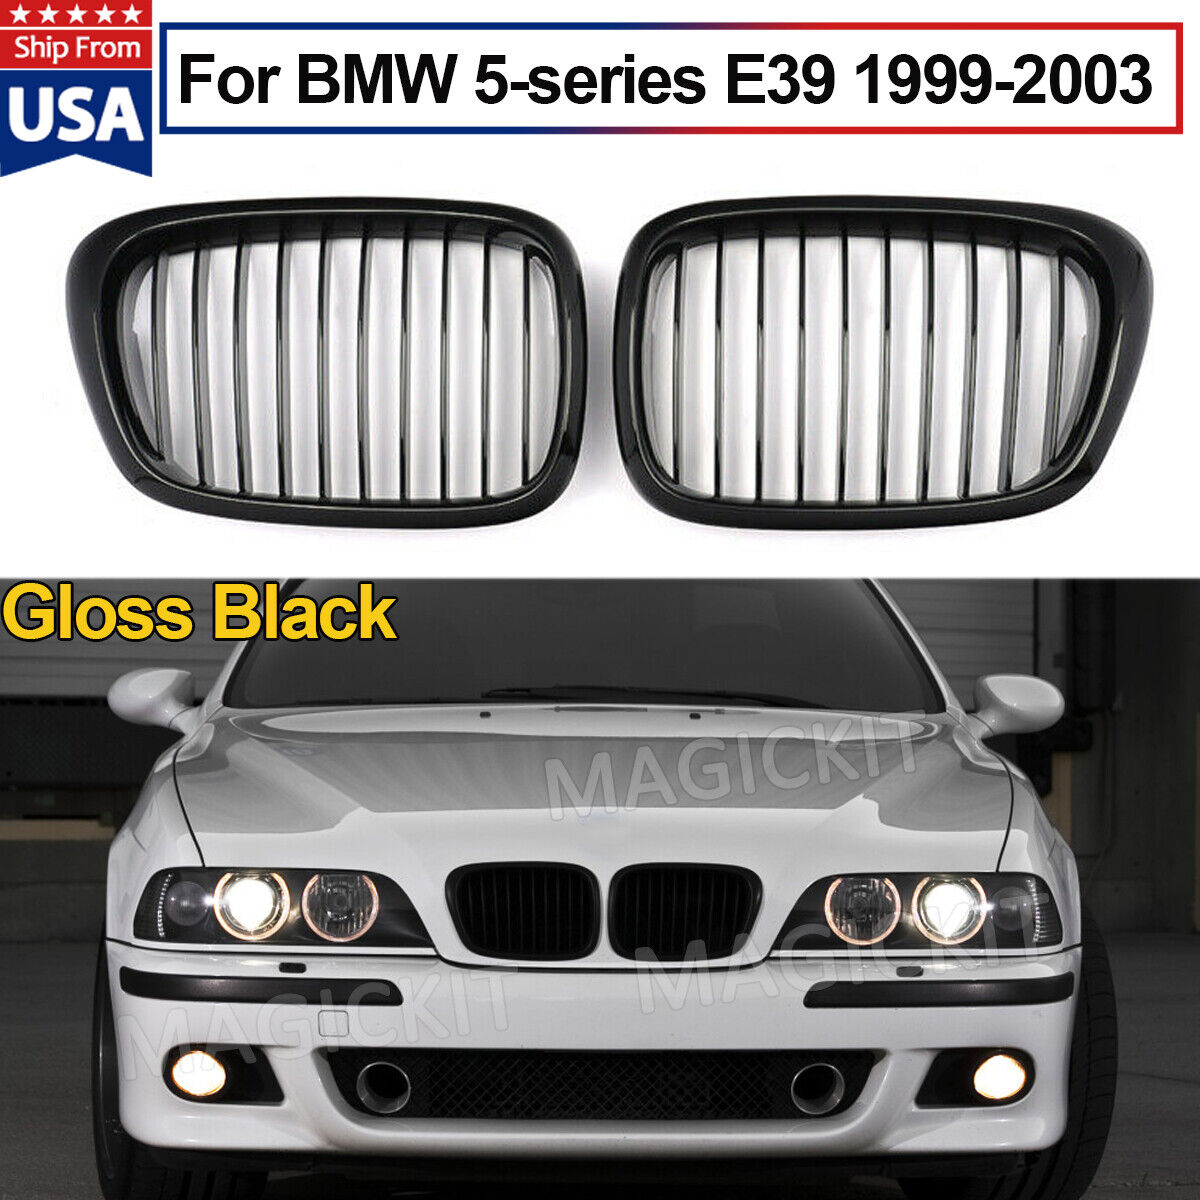 Front Kidney Grille Gloss Black For 1999-2003 BMW E39 5 Series 528i 525i 540i